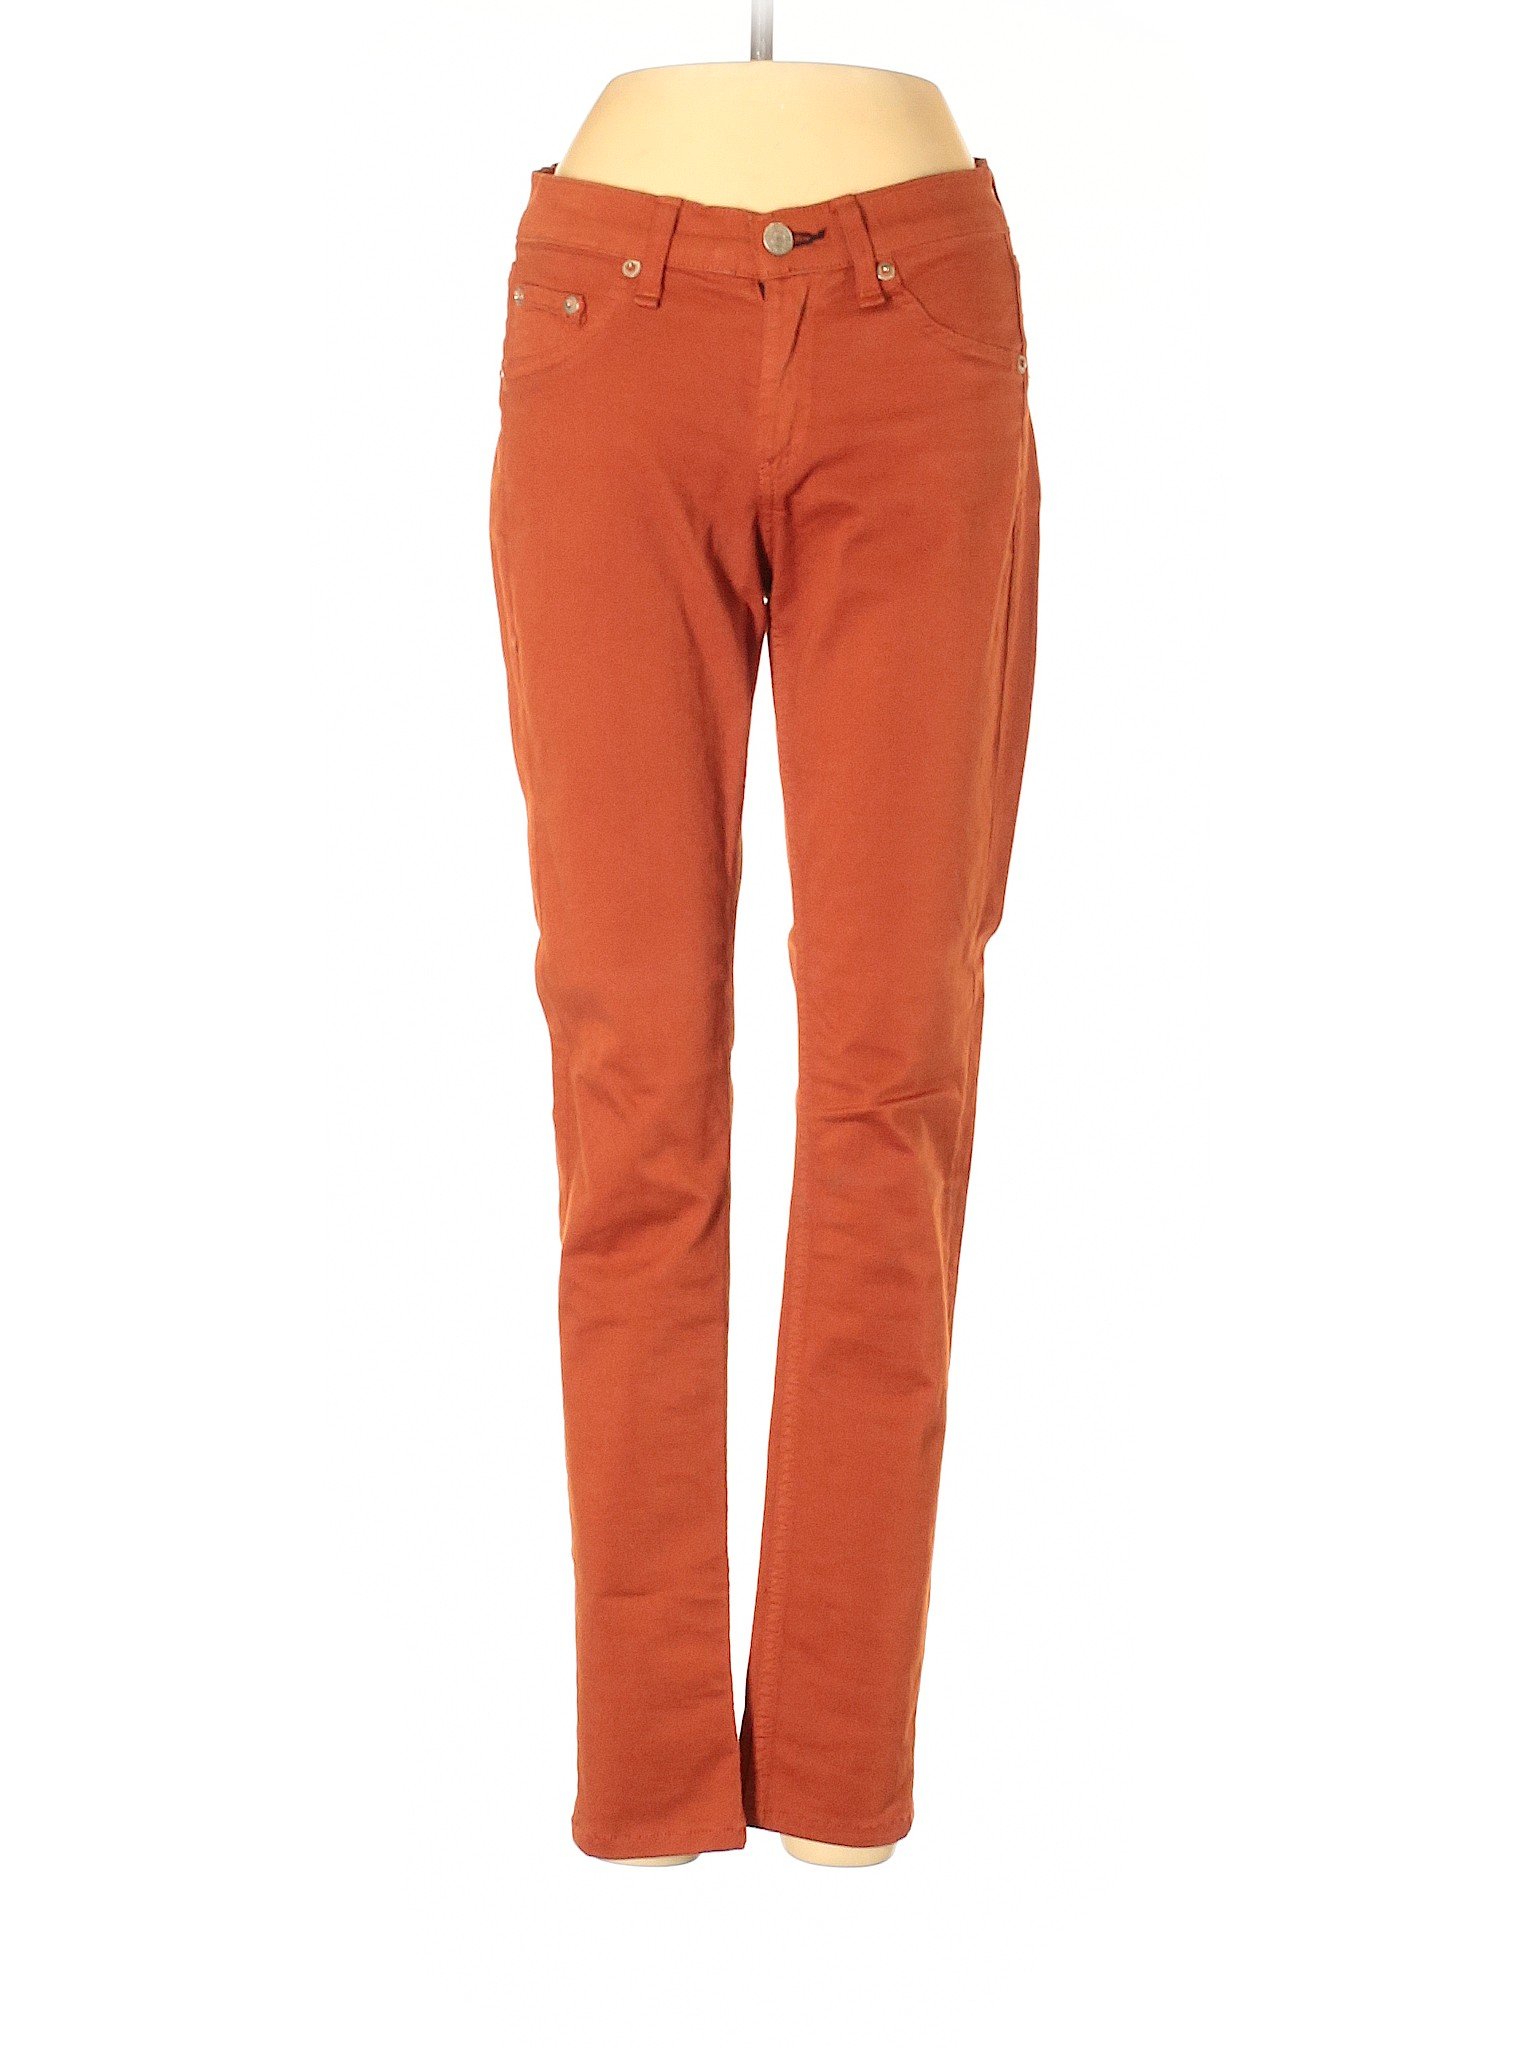 Rag & Bone Women Orange Jeans 25W | eBay